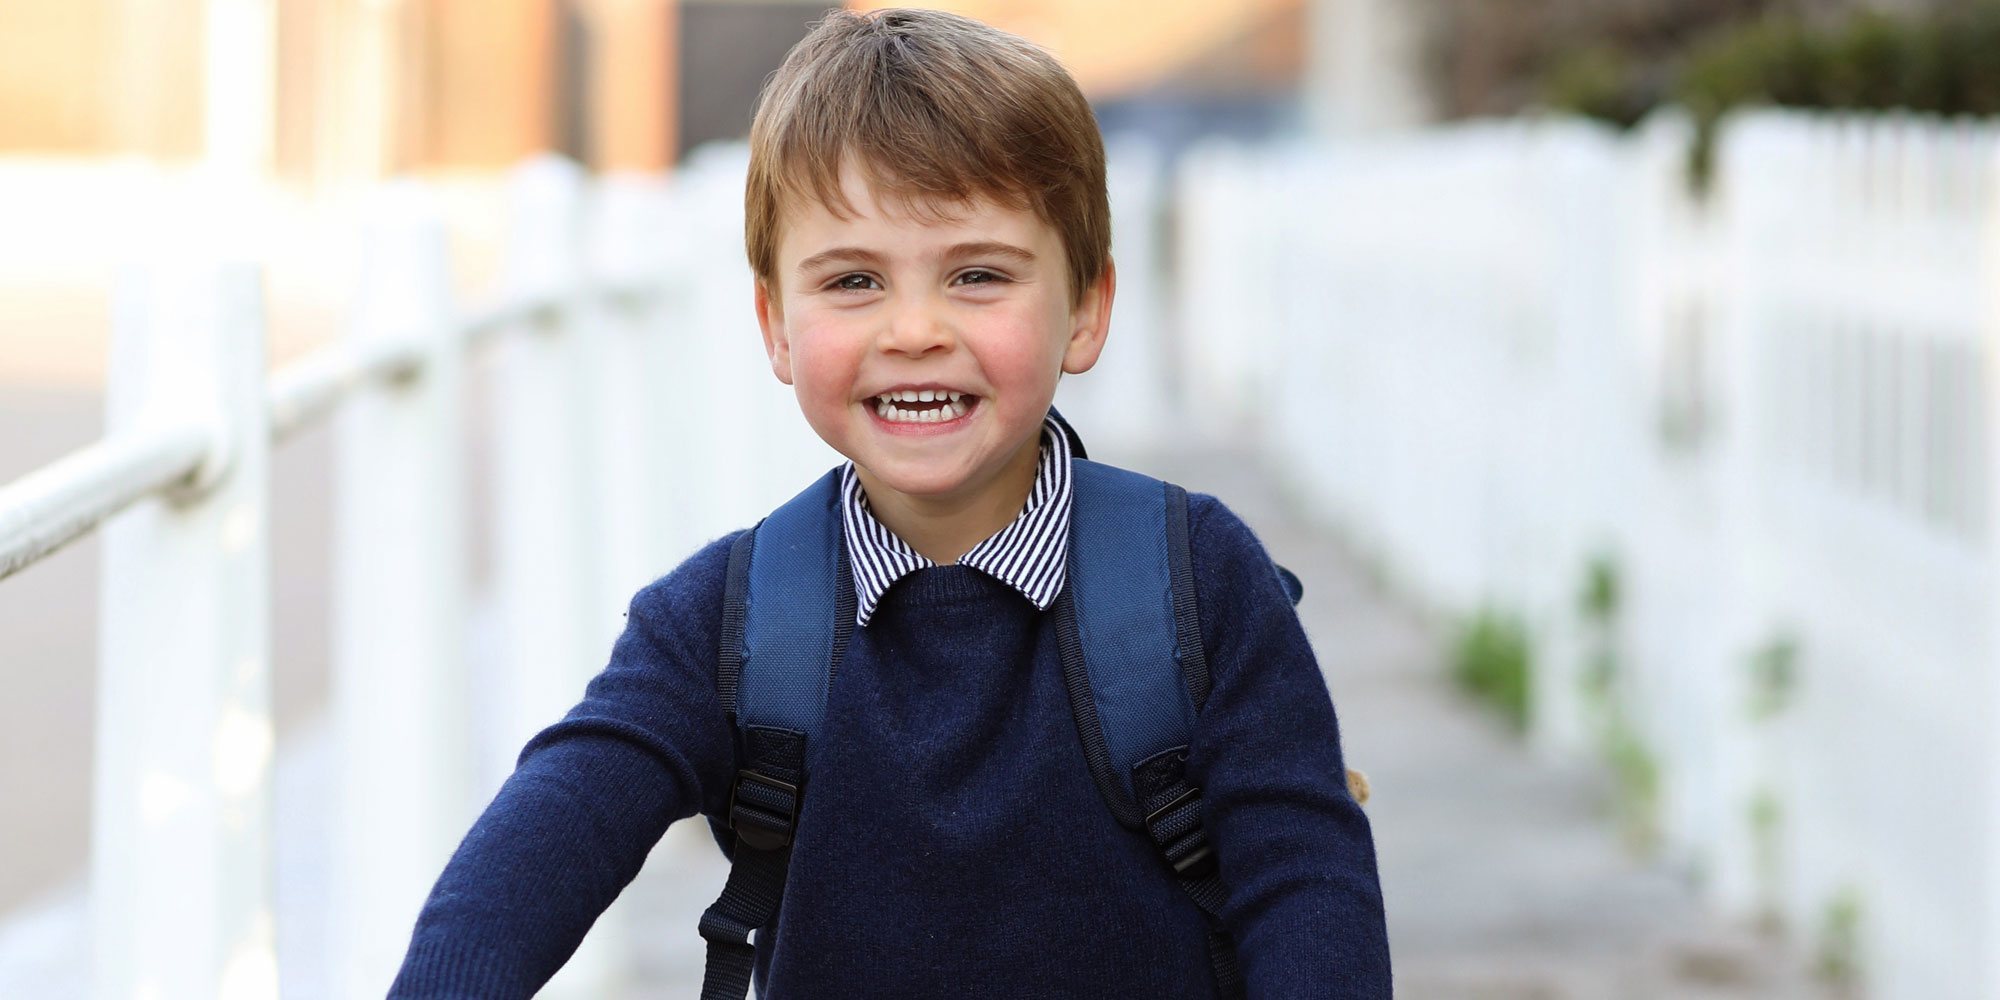 La celebración de los 3 años del Príncipe Luis: sonrisas, una bici y el primer día en la escuela infantil